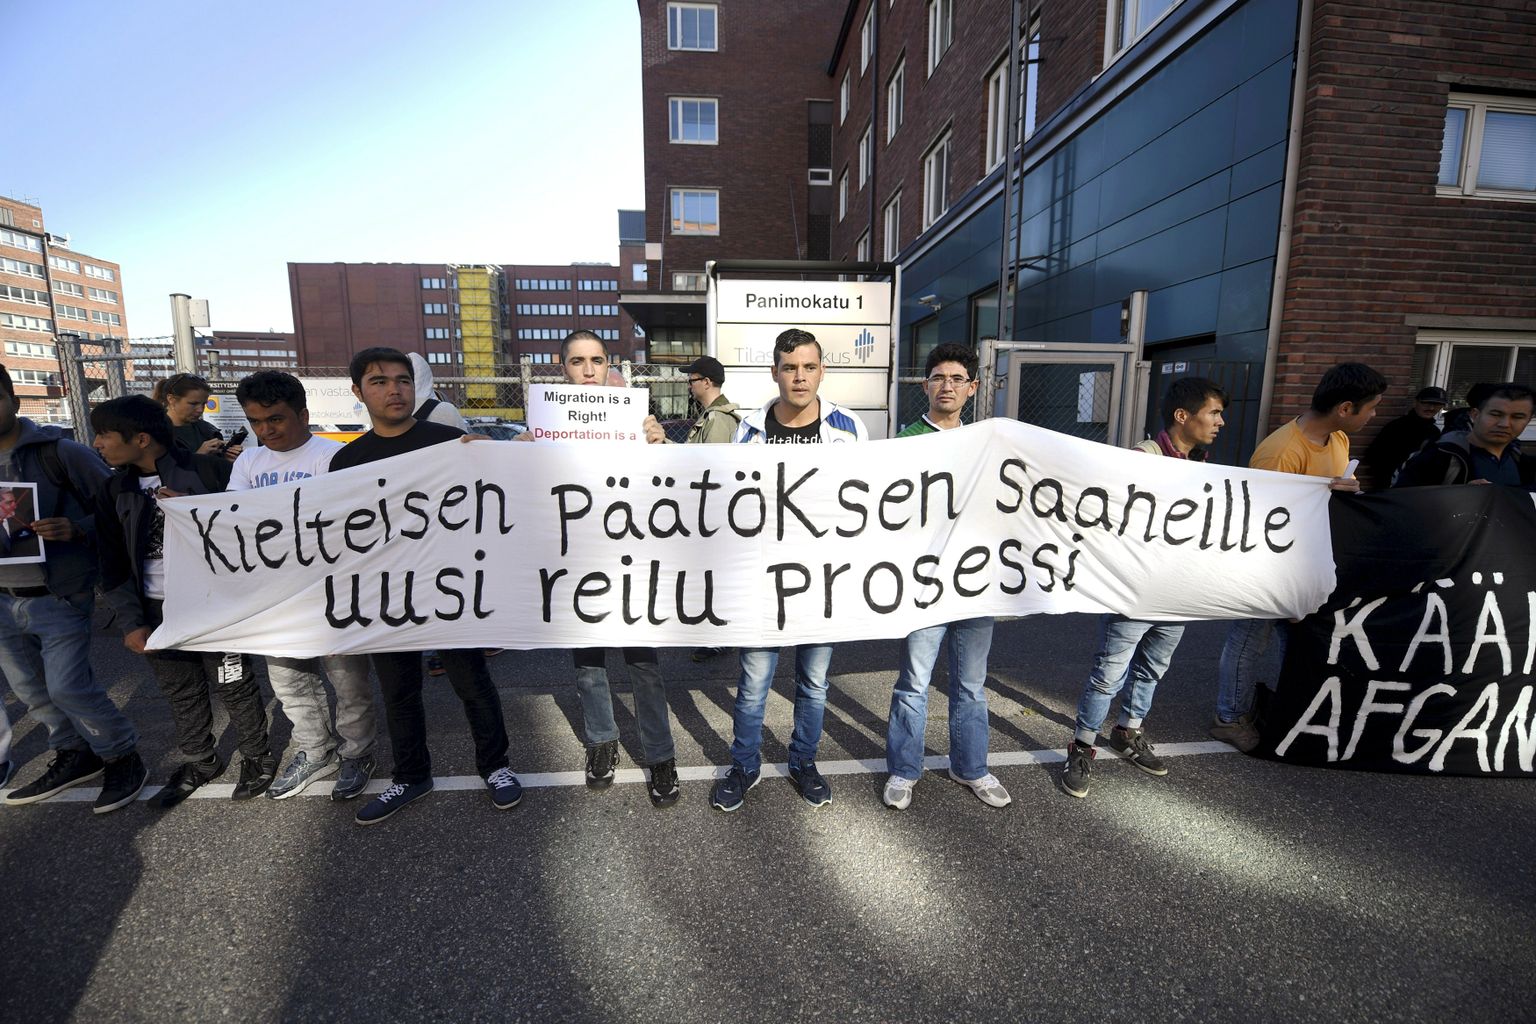 Soome immigratsooniameti väljasaatmisotsuste vastu protesteerivad inimesed 2016. aastal. Pilt on illustratiivne.